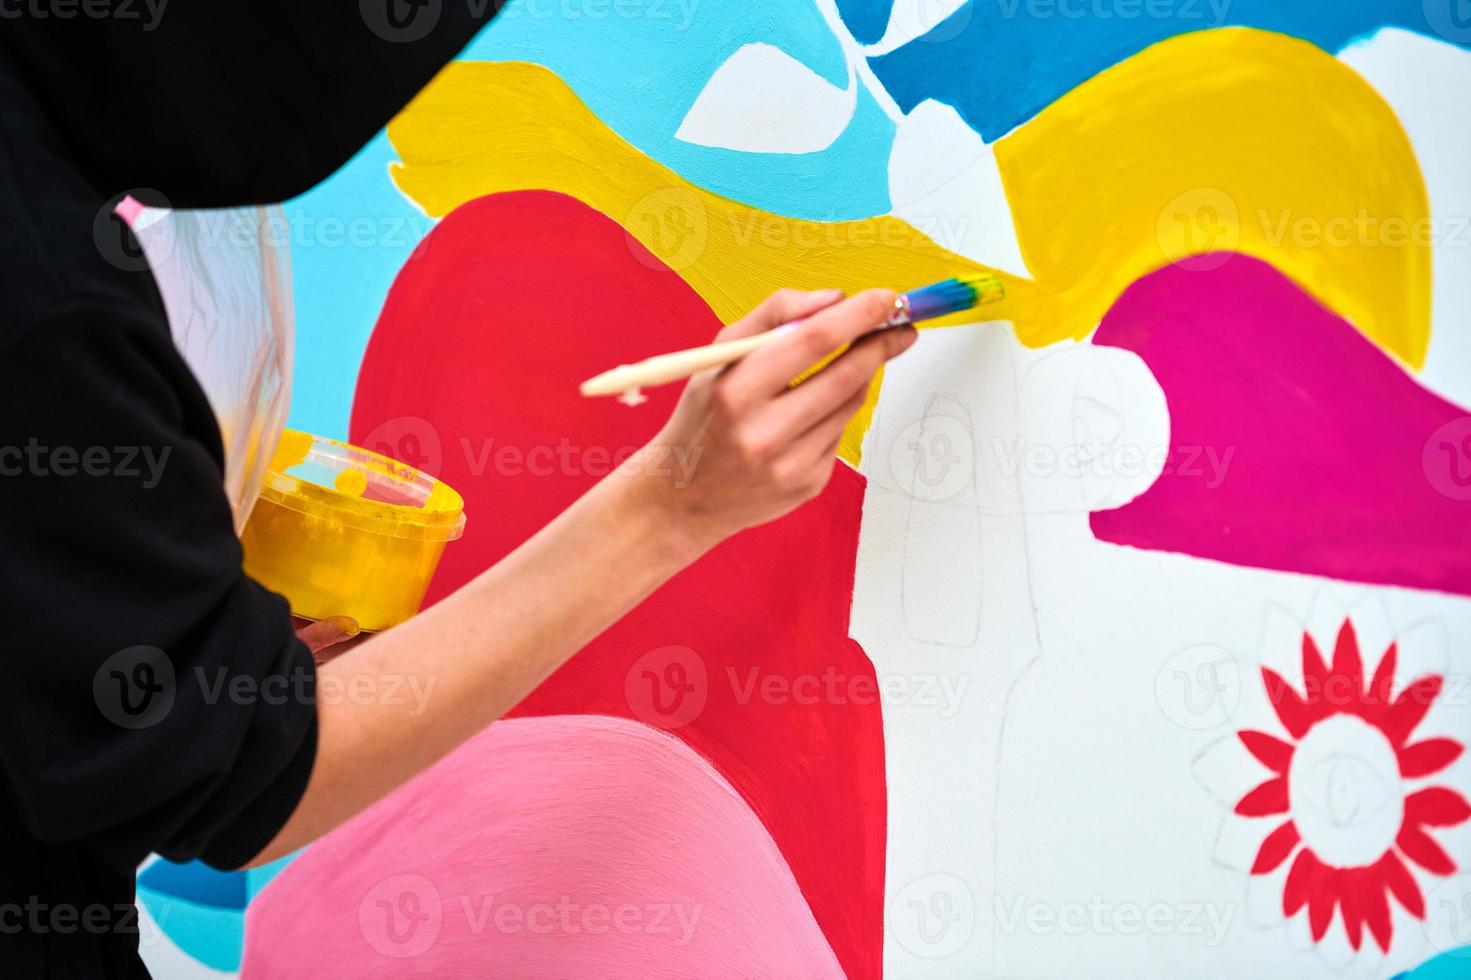 artiste en sweat à capuche noir peignant une image colorée avec un pinceau sur une toile blanche au festival d'art photo